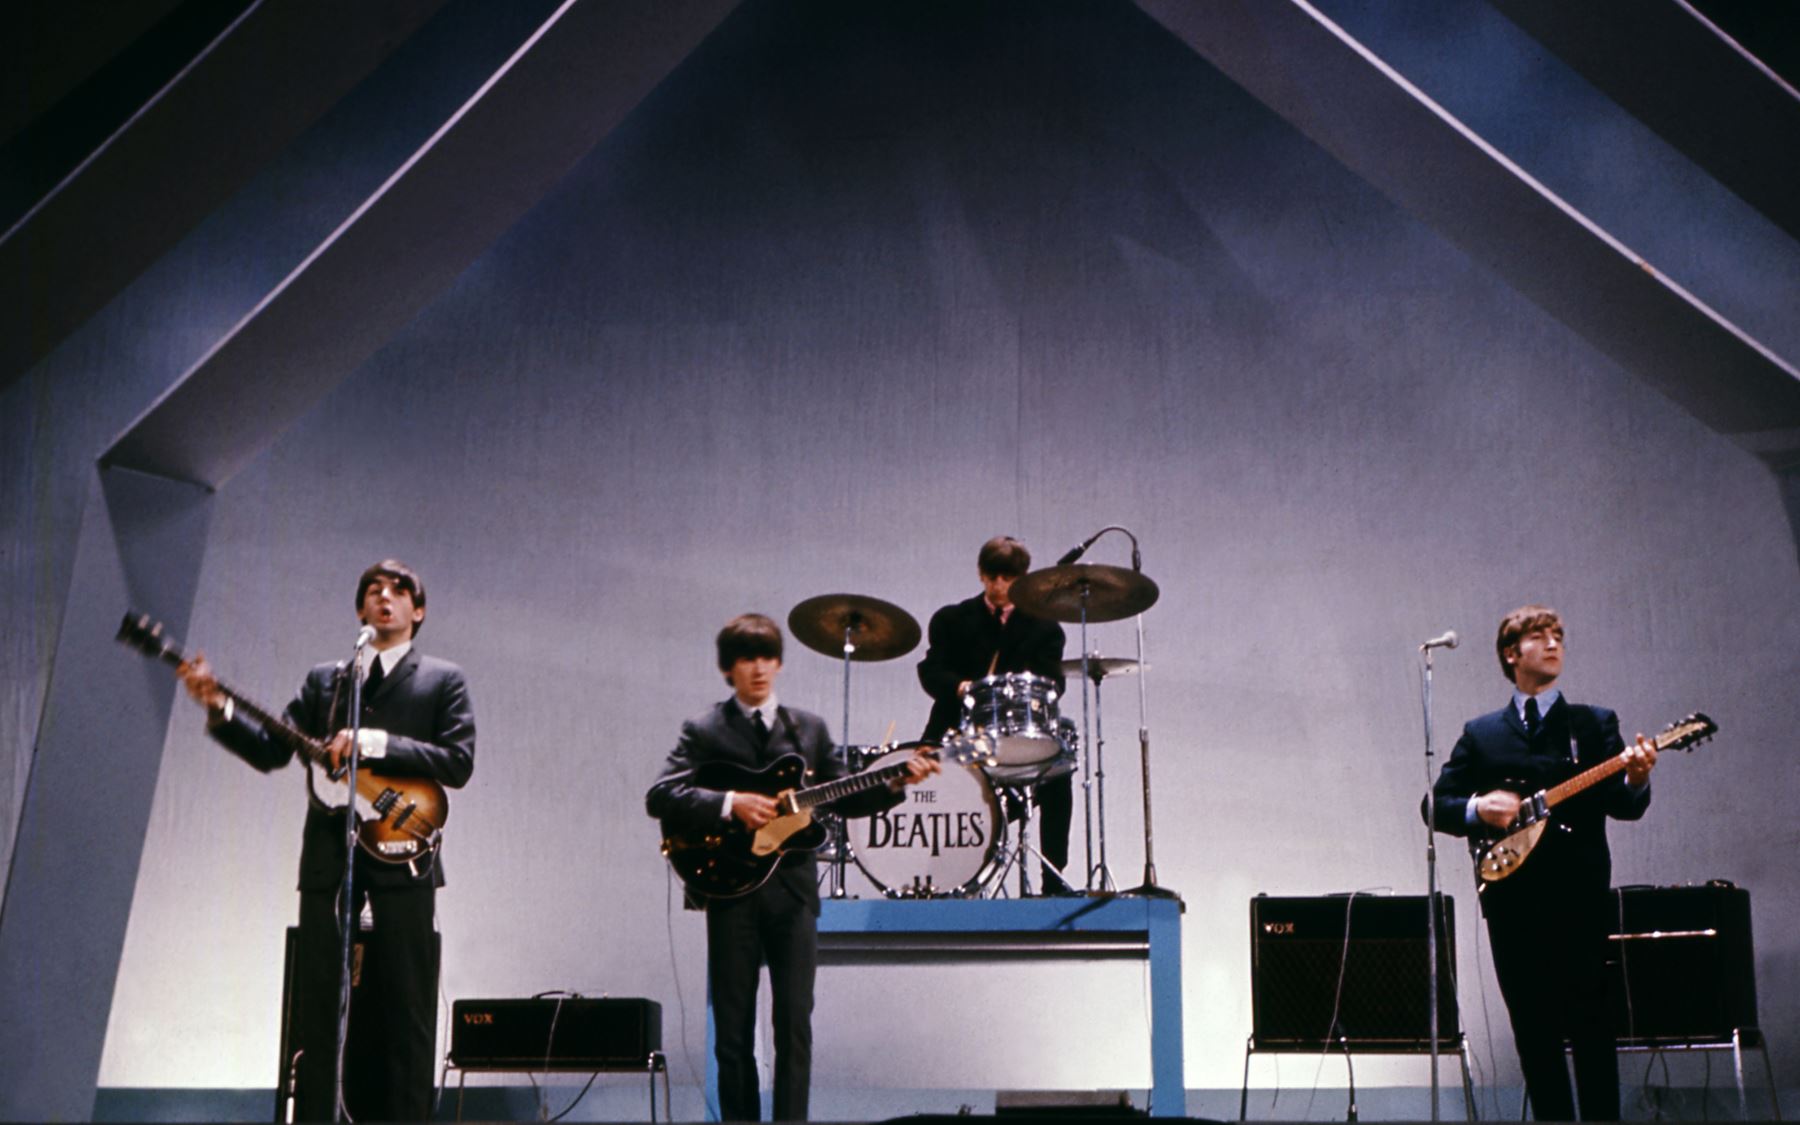 La banda inglesa The Beatles (de izquierda a derecha), Paul McCartney (bajo), George Harrison (guitarra), Ringo Starr (batería) y John Lennon (guitarra) se presentan en el escenario durante un concierto el 29 de julio de 1965 en Londres. / AFP